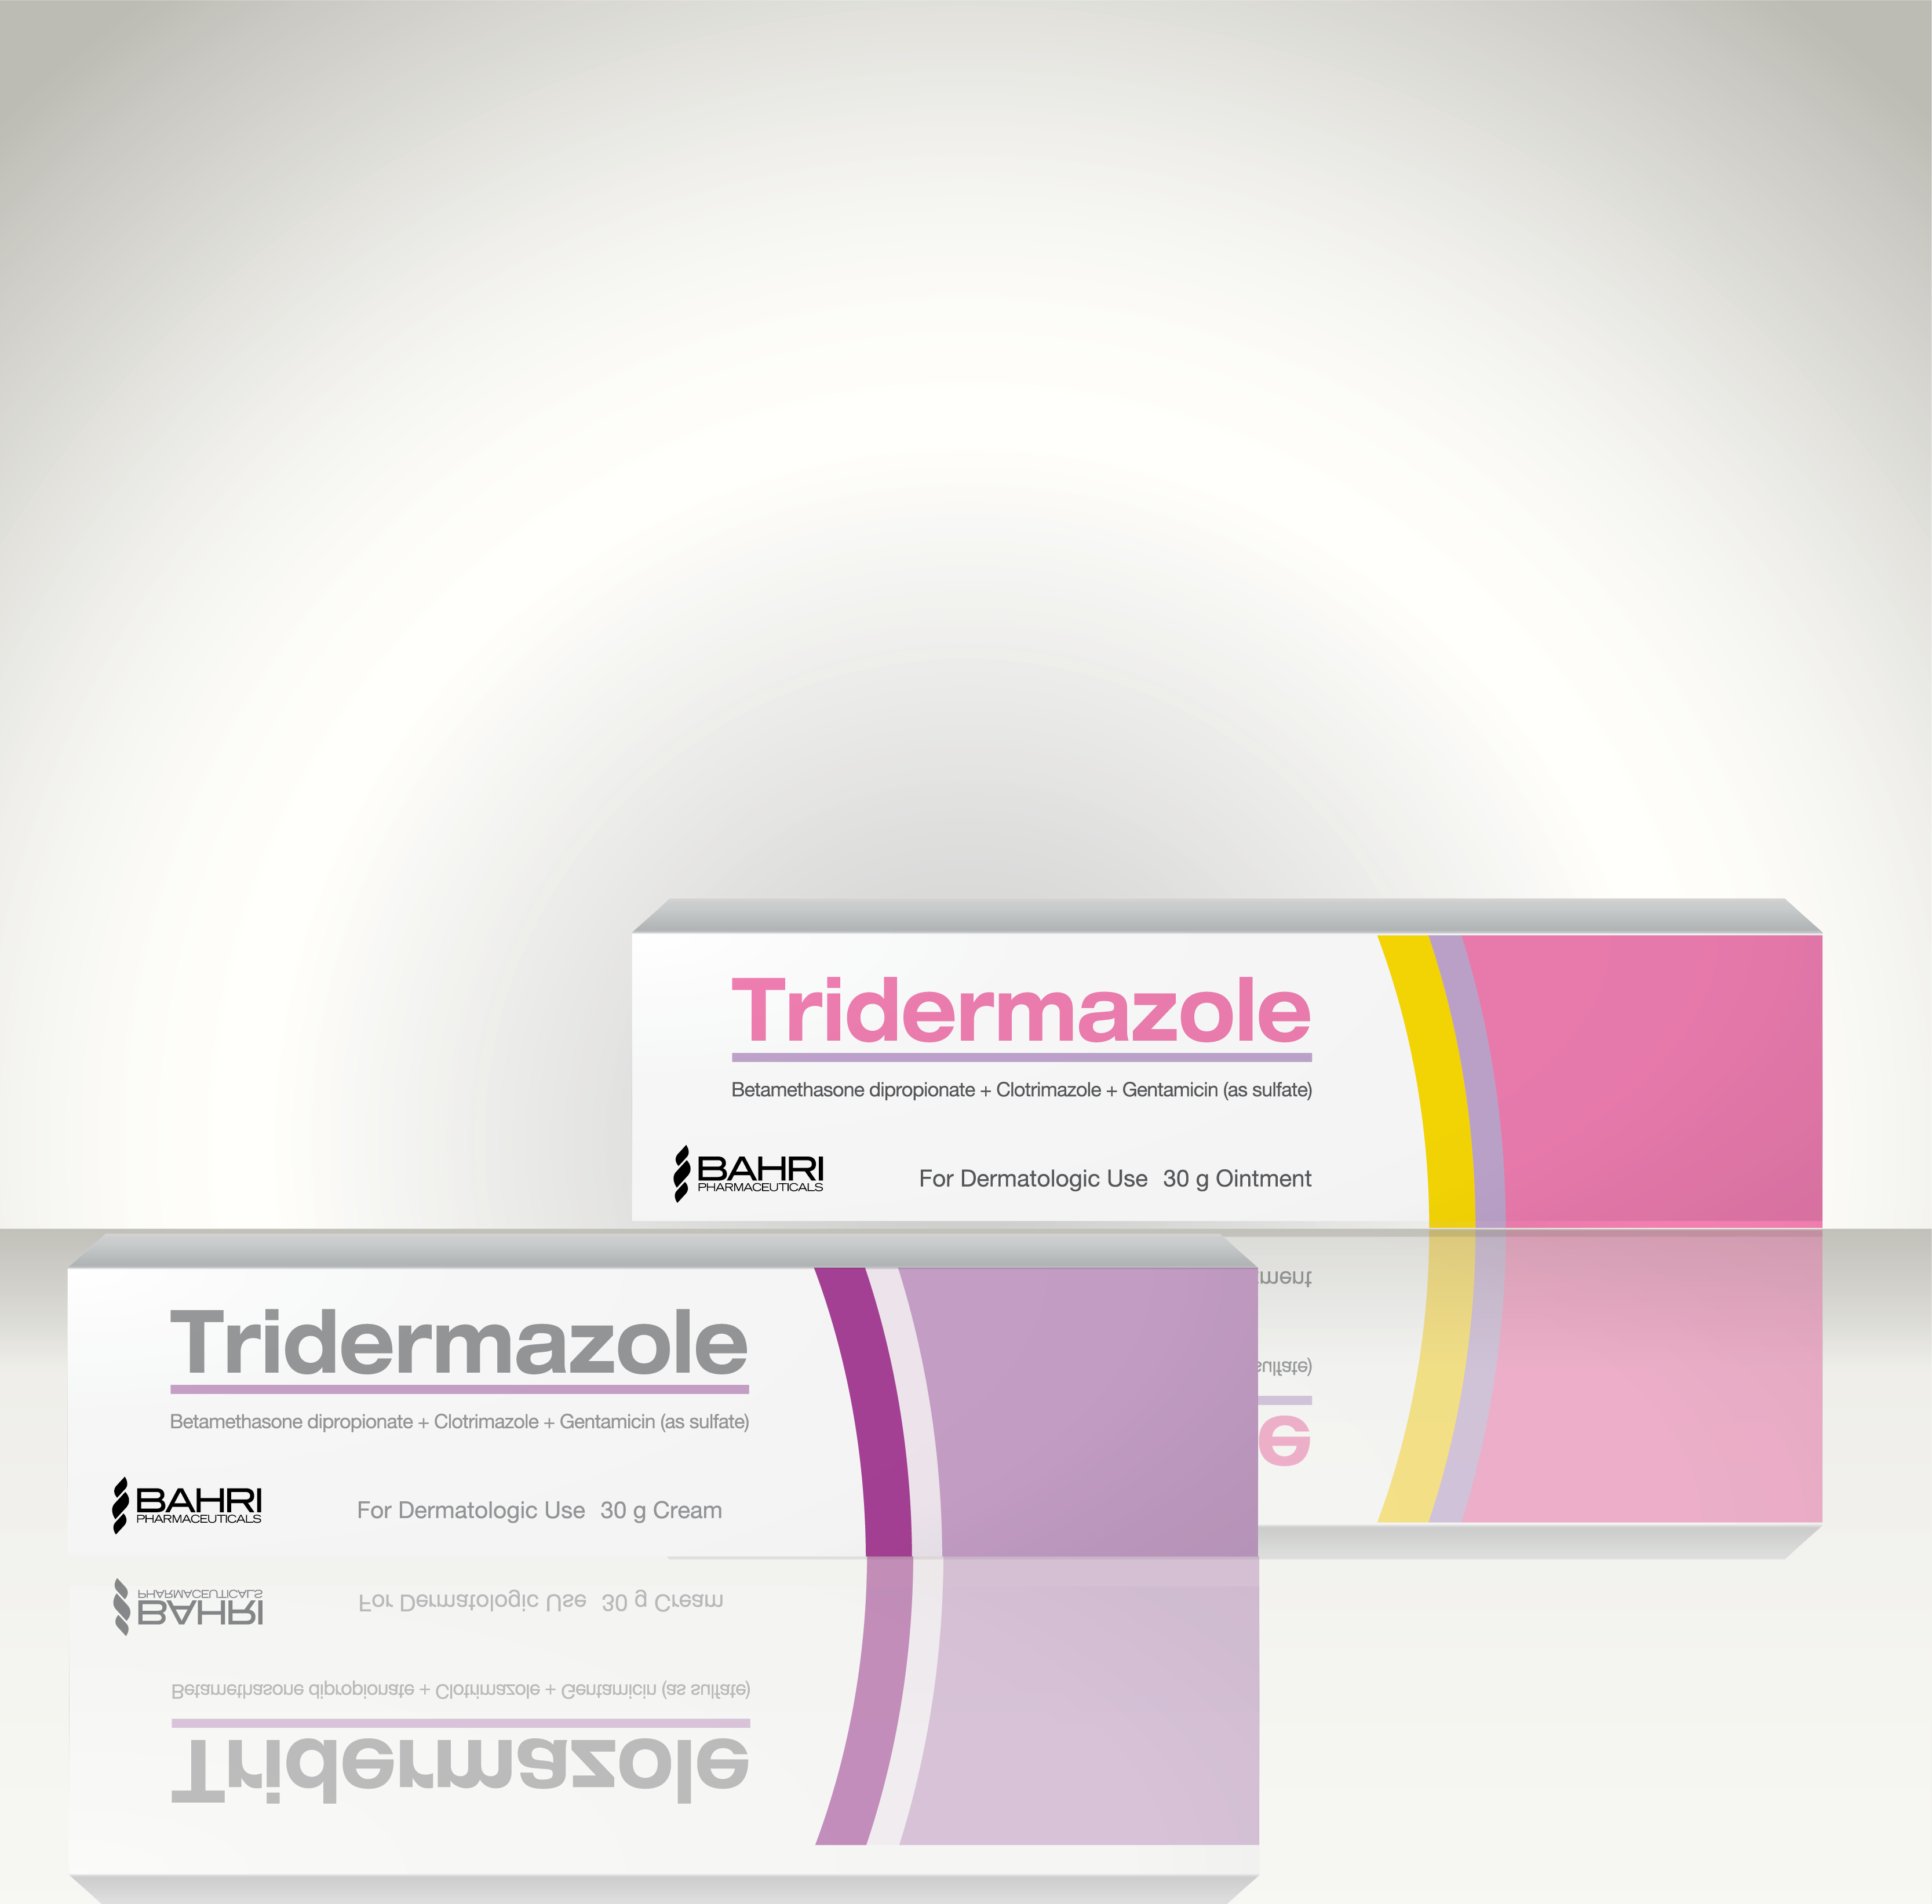 Tridermazole